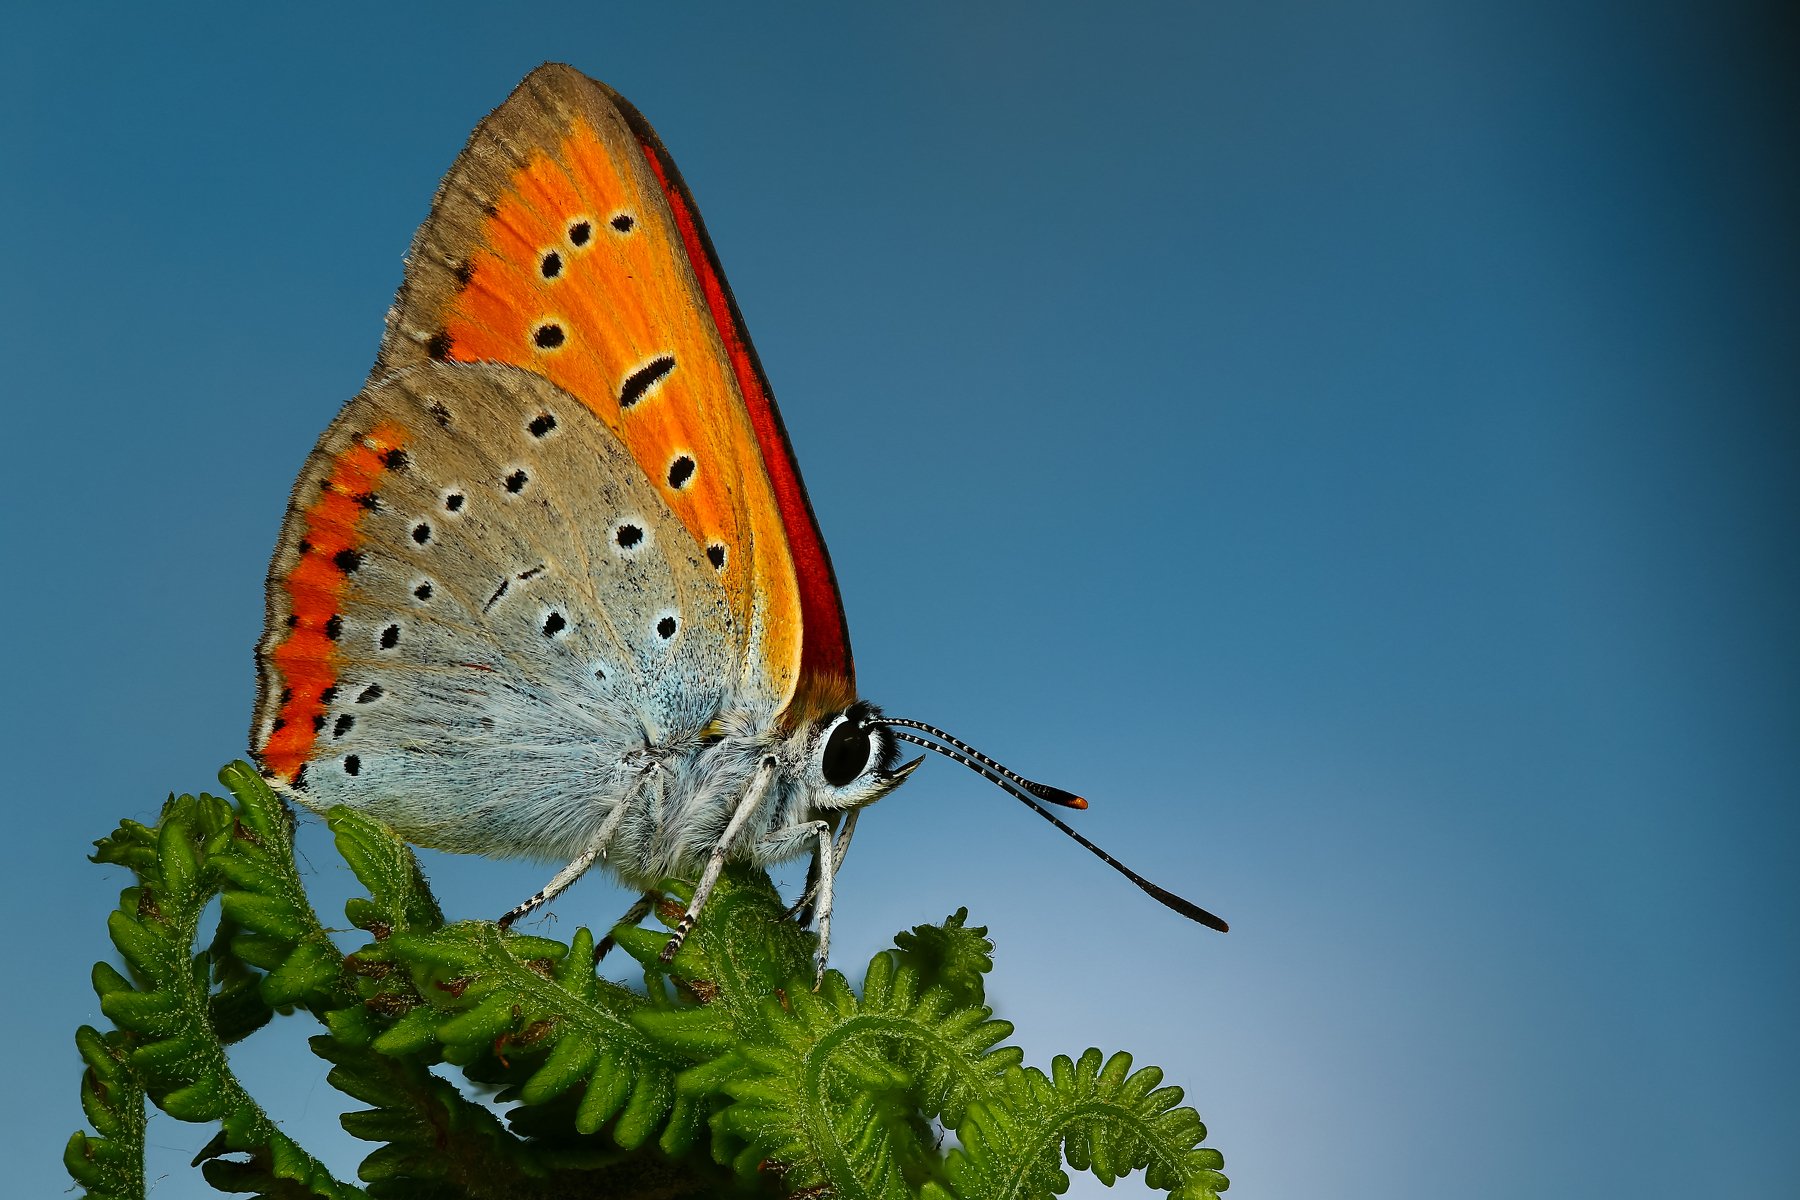 бабочка,макро,природа,усы,цвет,зеленый,растение,синий, Андрей Шаповалов